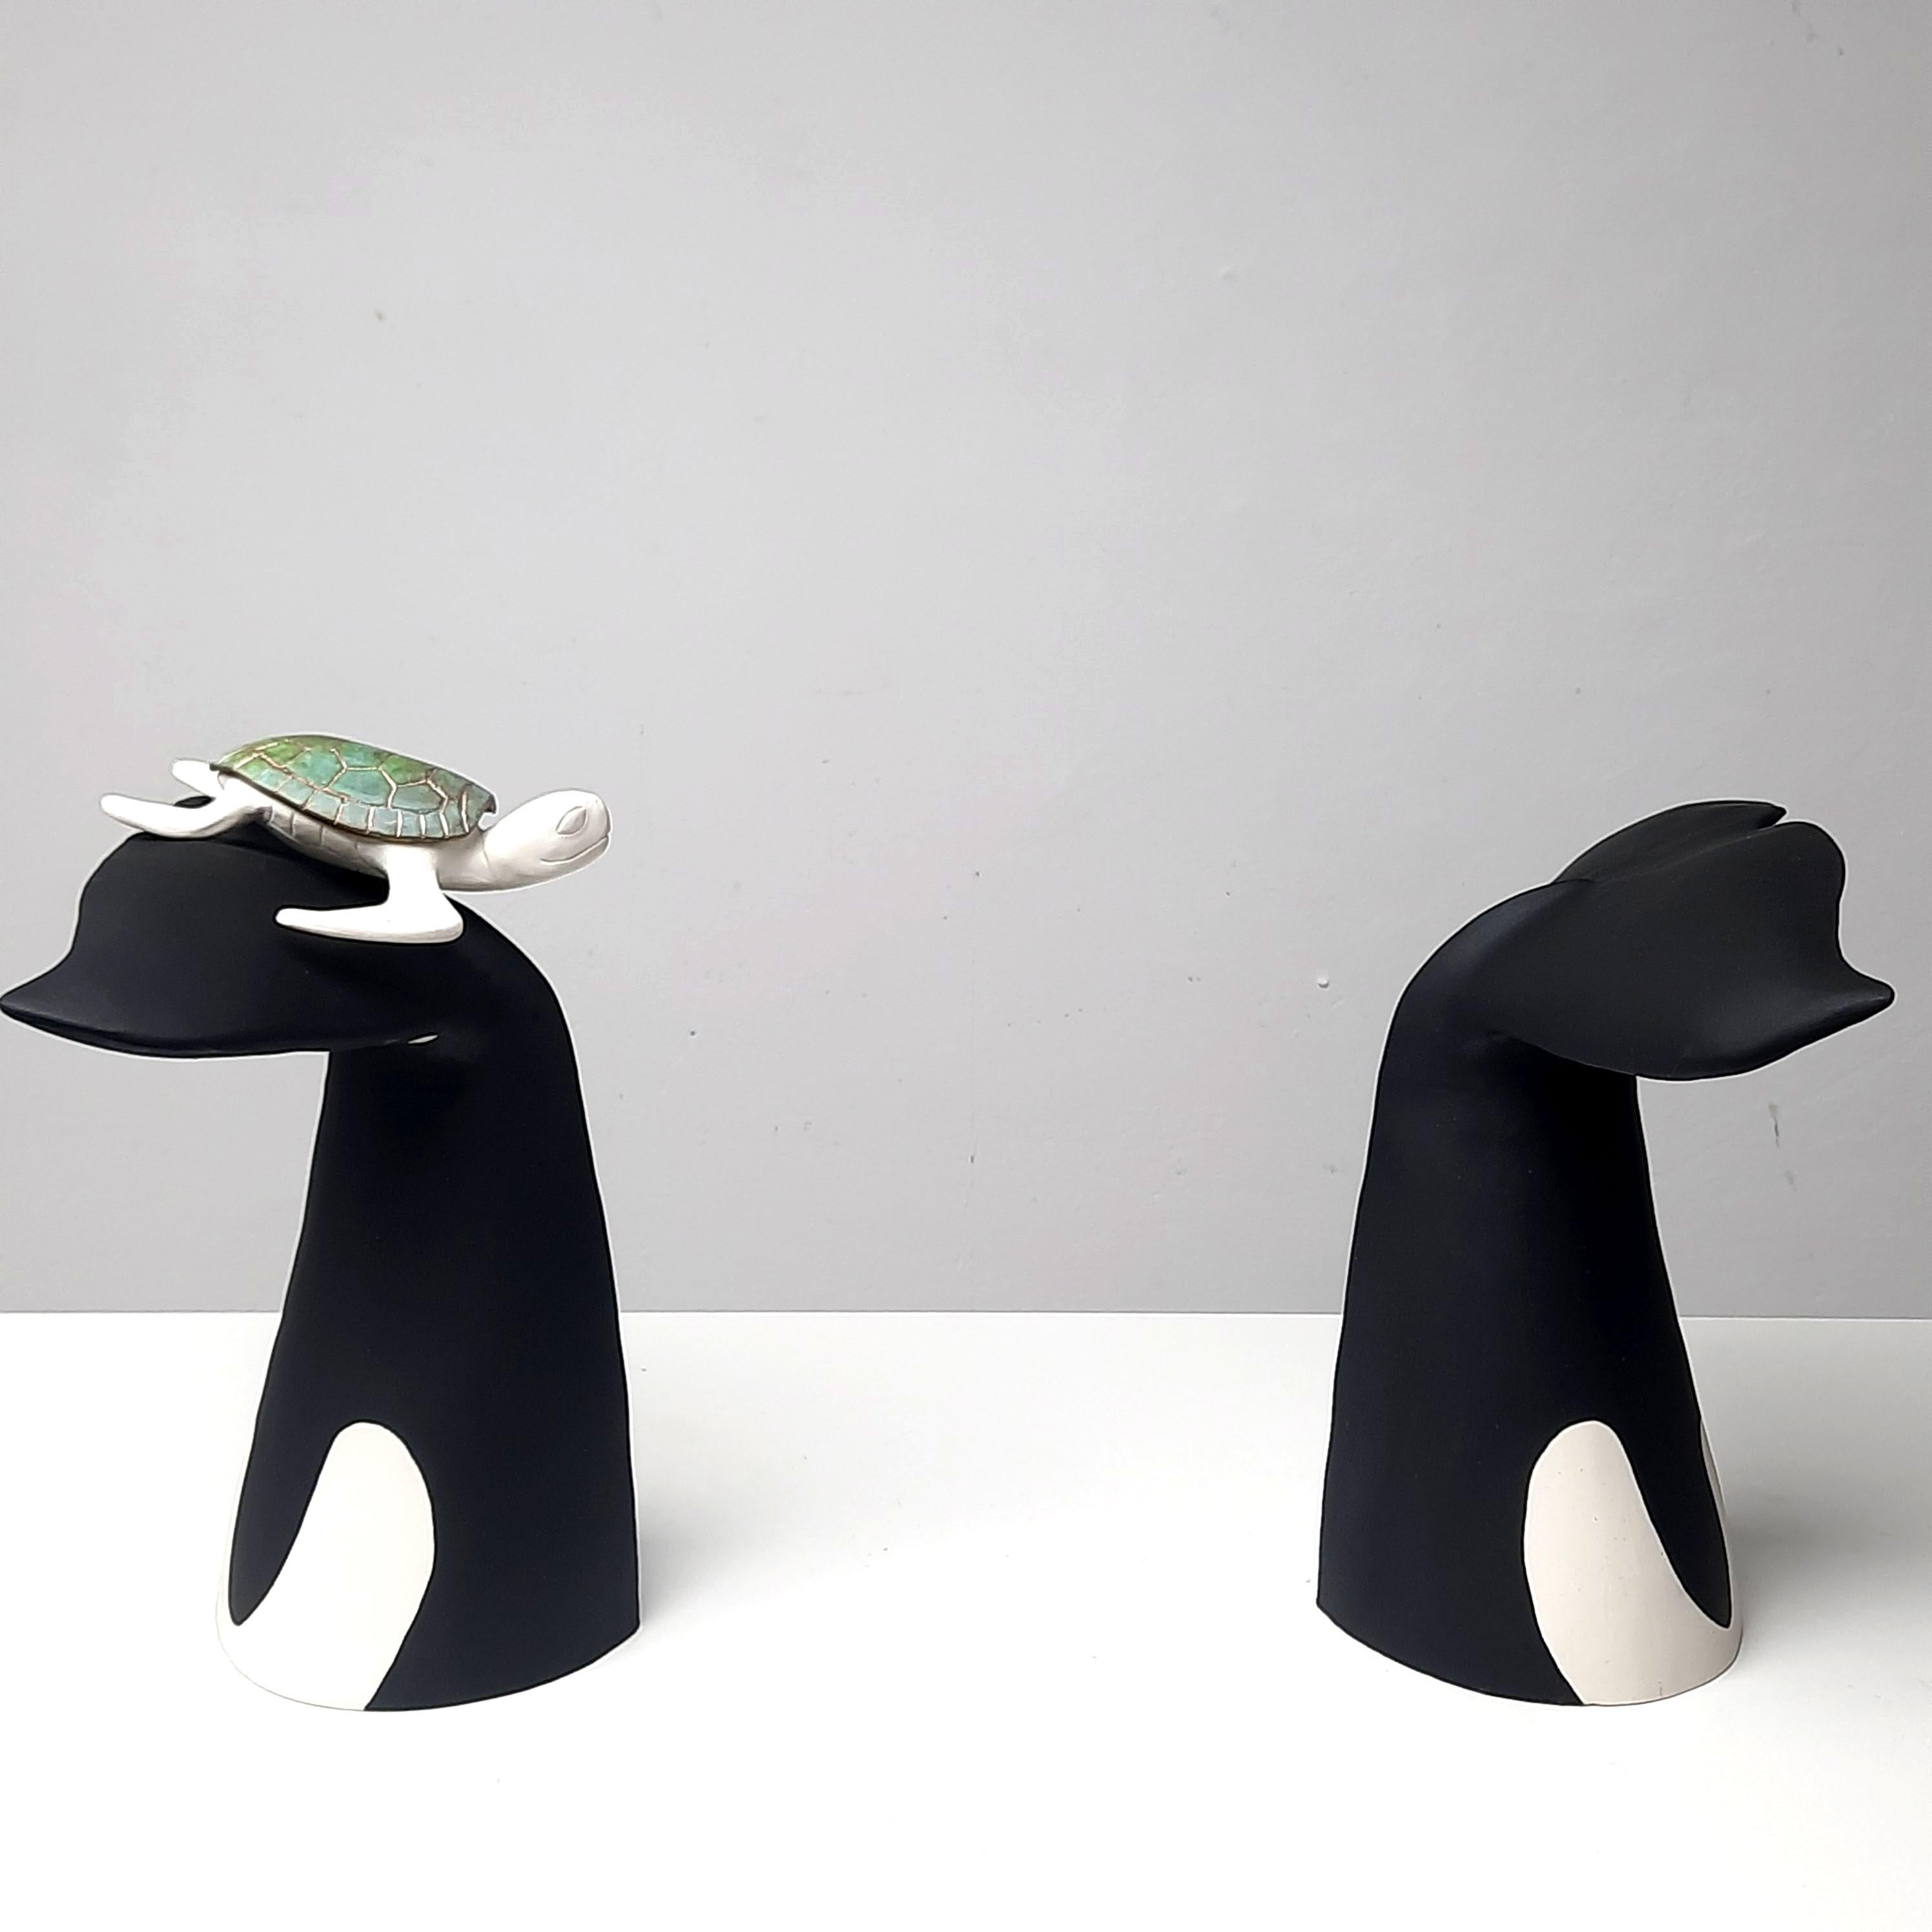 La vie est trop courte Enjoy II-sculpture animalière réaliste-art contemporain - Art de Henk Jan Sanderman